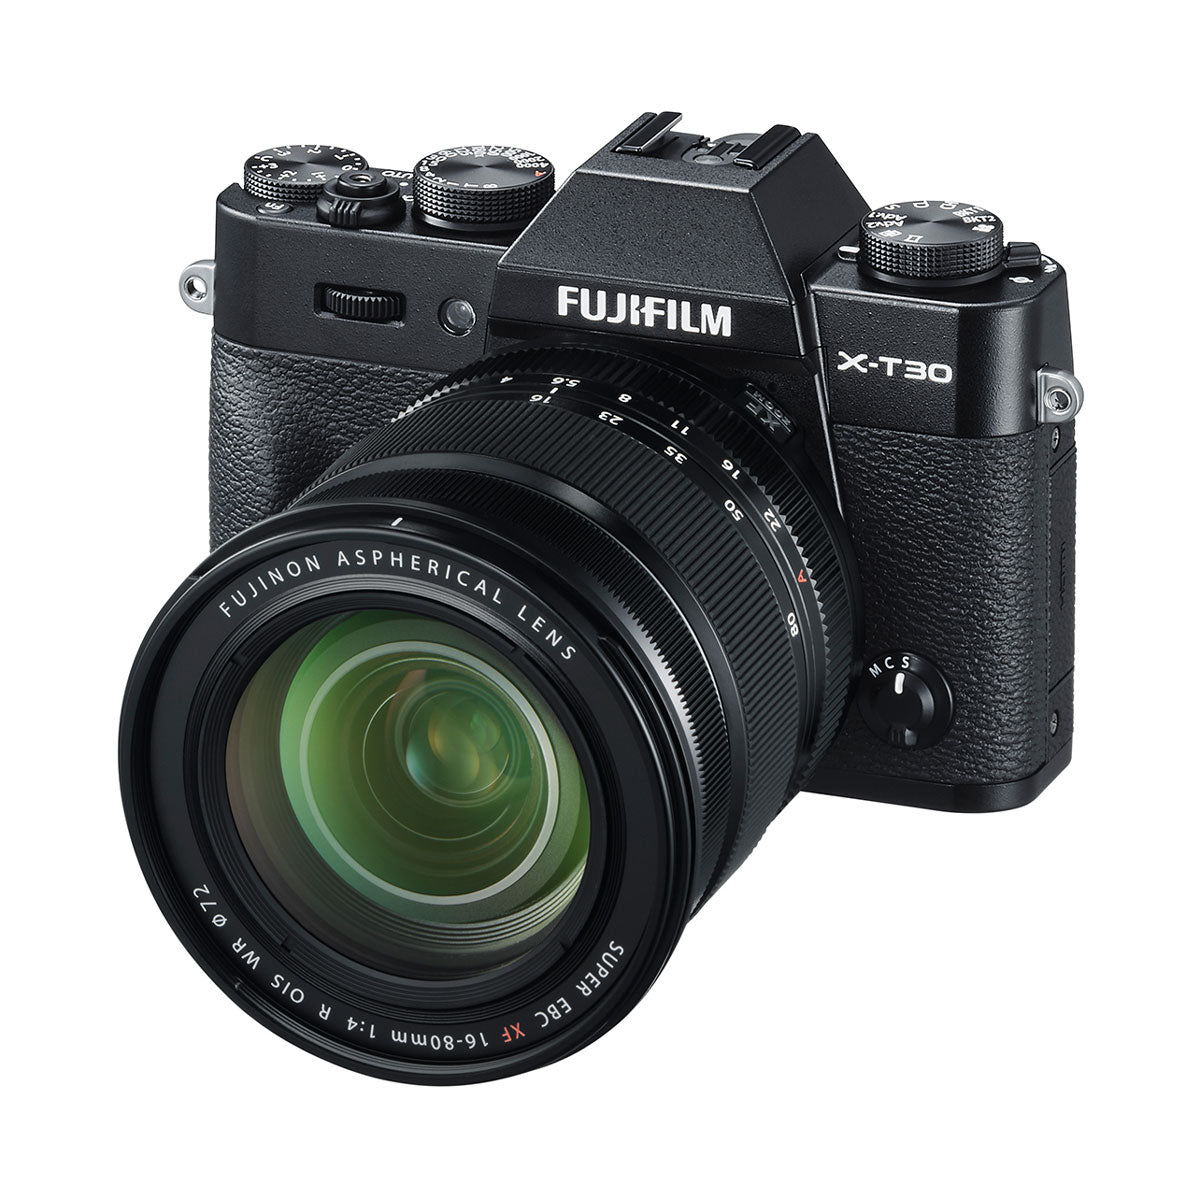 Fujifilm XF 16-80mm F4 R OIS WR Lens